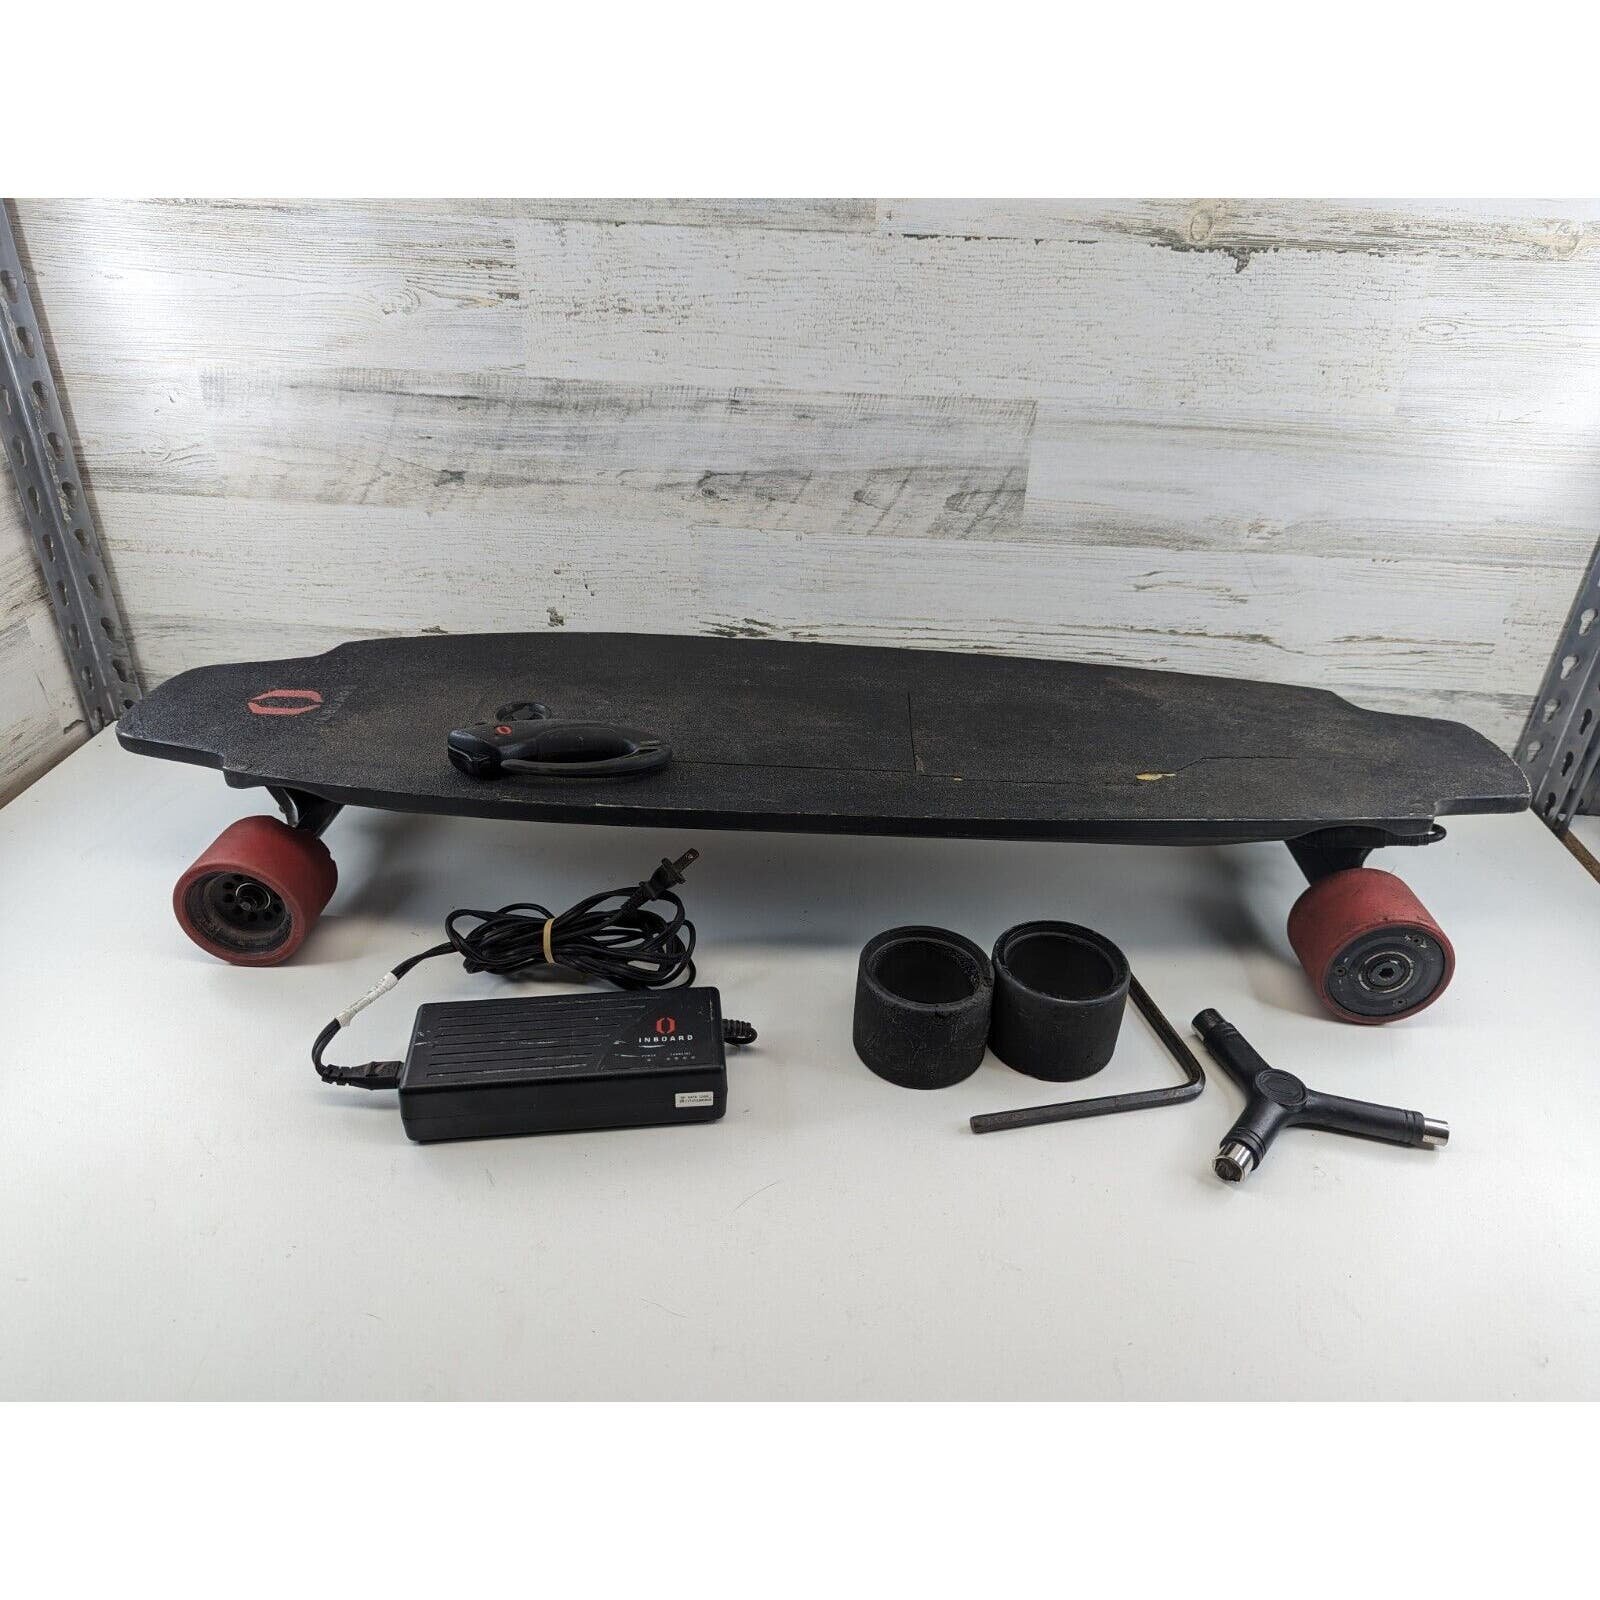 Inboard Technology M1 Electric Longboard Skateboard Car